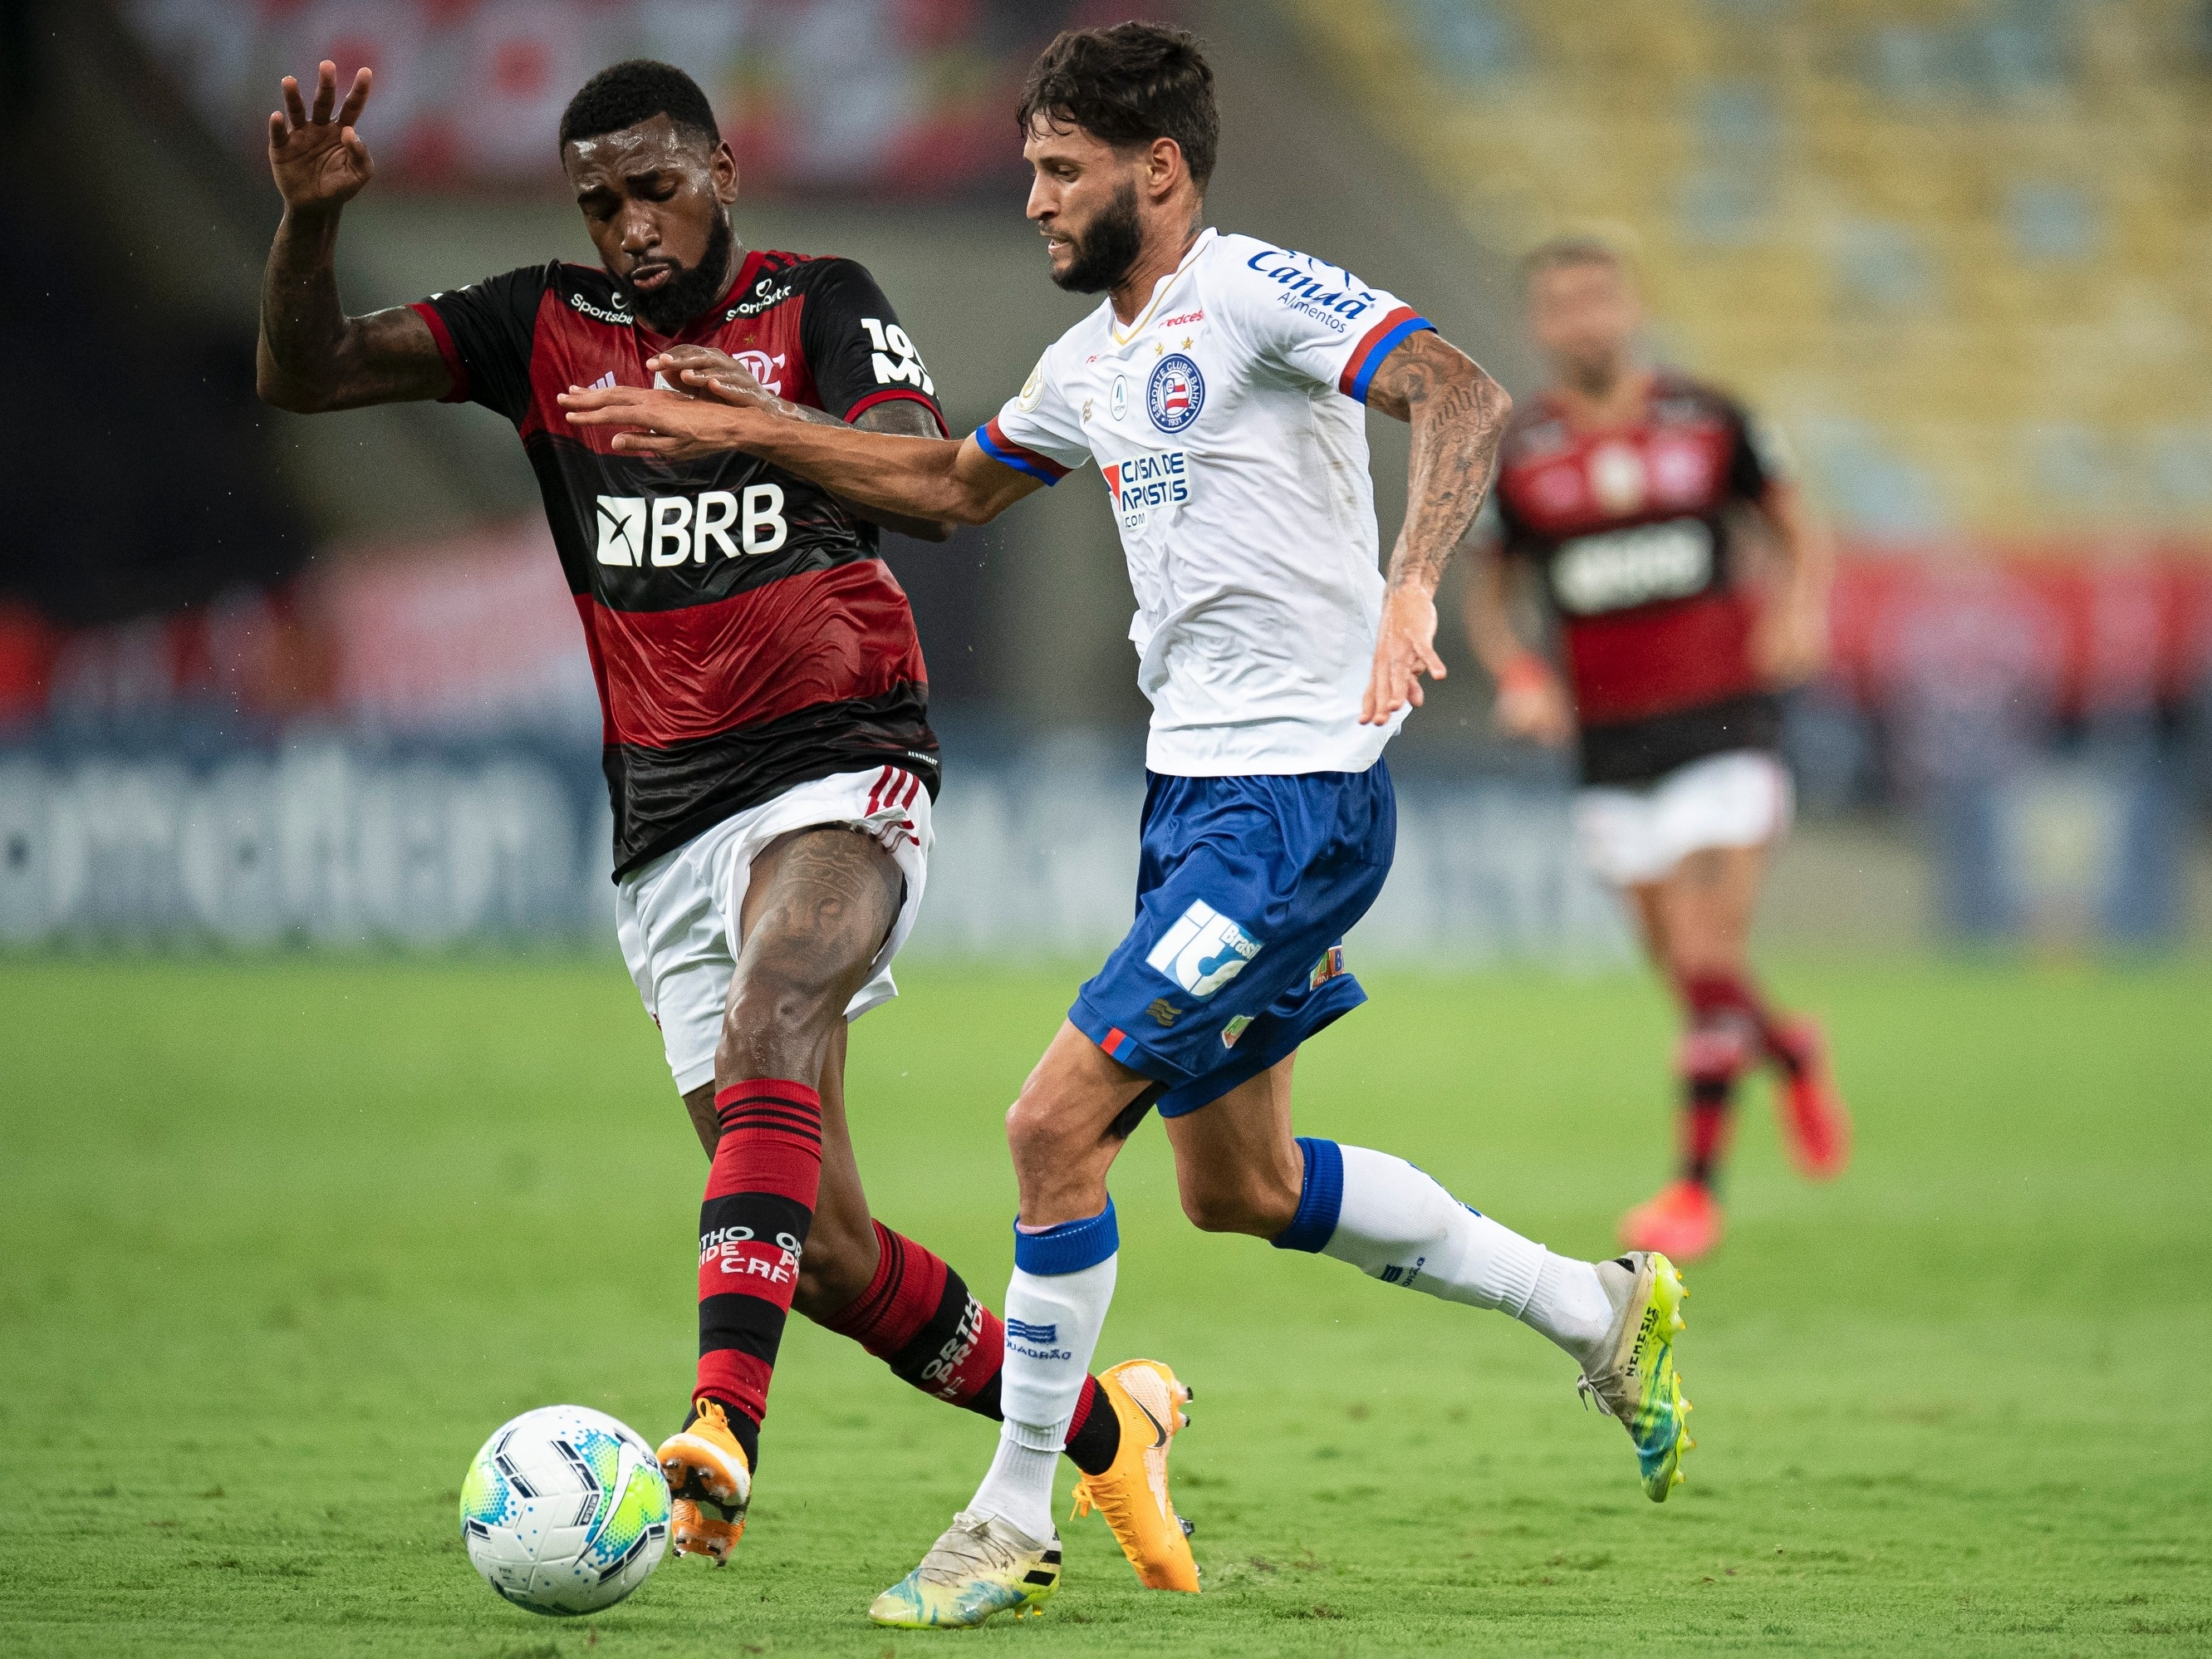 Com pênalti polêmico, Bahia perde para o Flamengo no Maracanã